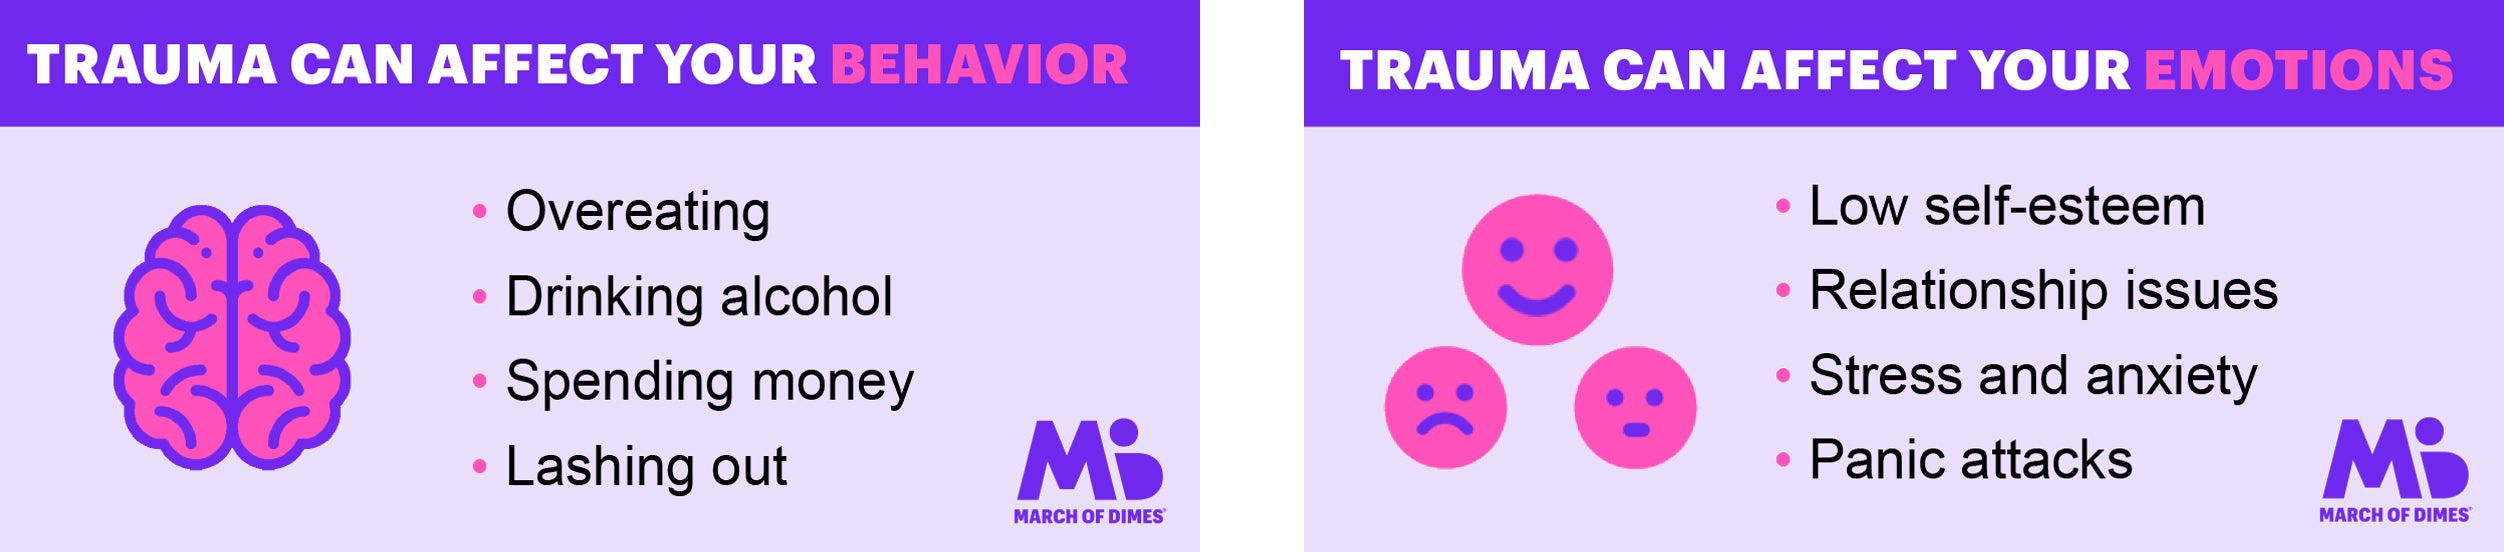 Trauma Behavior Emotions